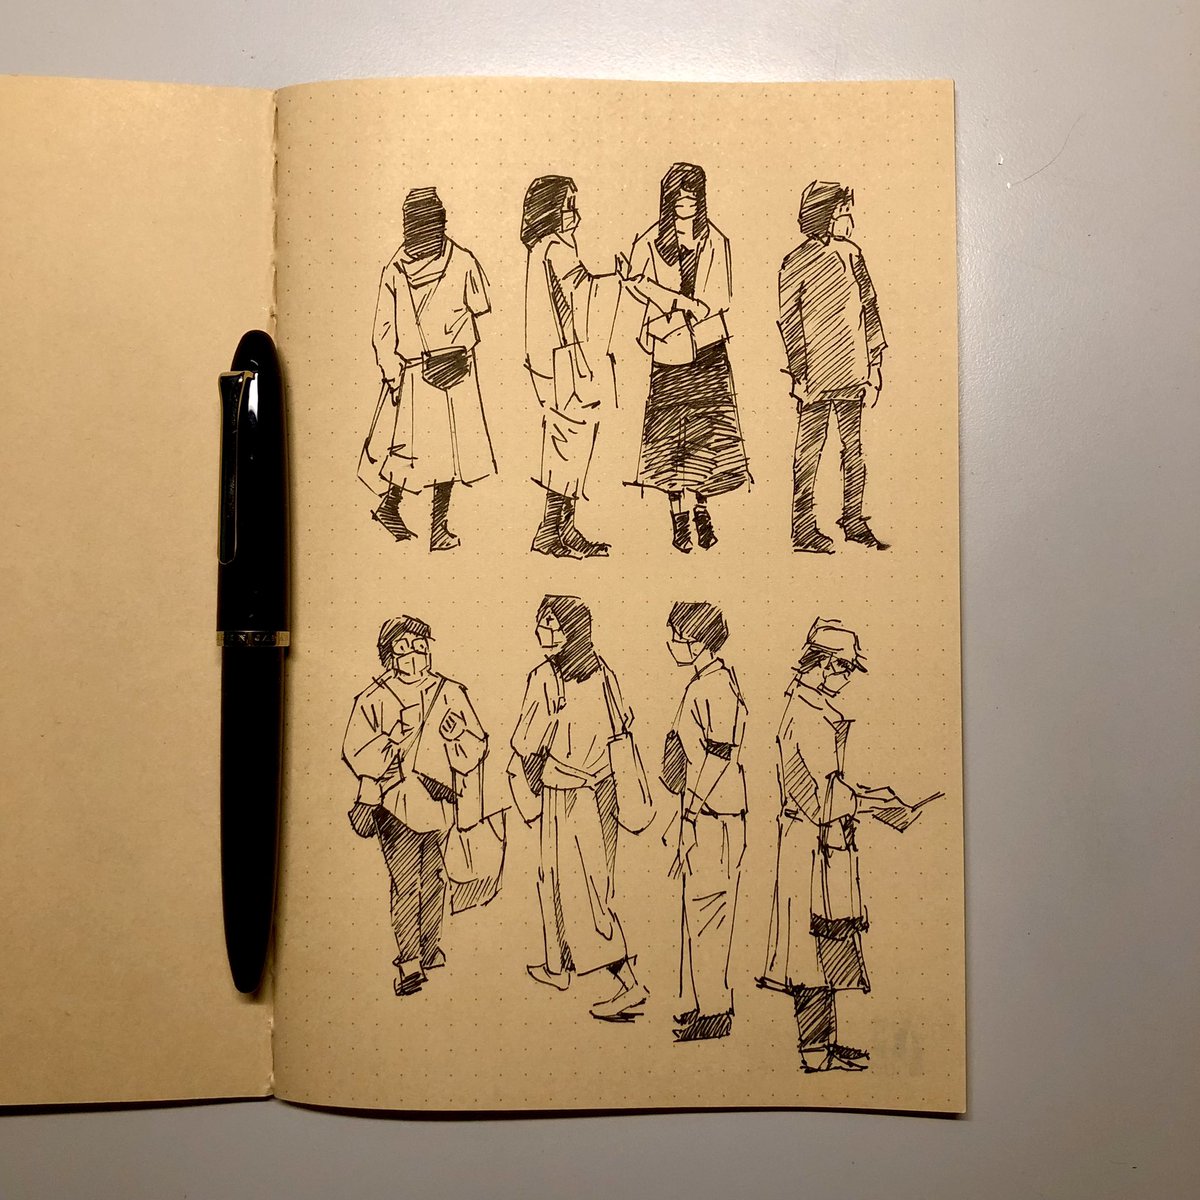 先週の #紙博 で買った #MeetsTakegami の竹紙ノートと #神戸派計画 の万年筆用Liscio-1ノートに人物スケッチした。あと1冊ノート買ったからスケッチしよう🖋
https://t.co/EEDWwHcpUe 